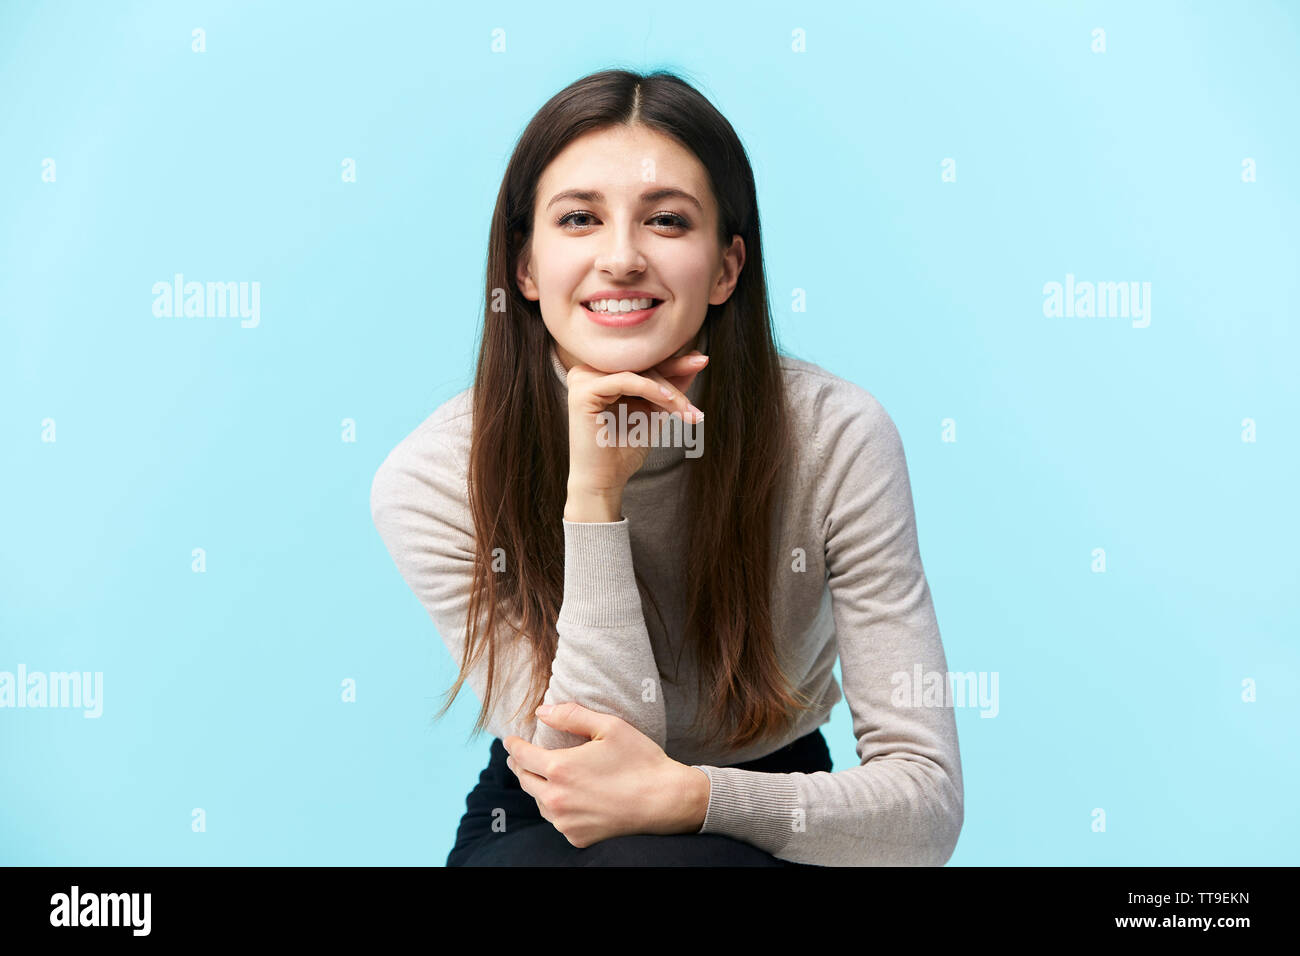 Portrait d'une belle jeune femme de race blanche, heureux et souriants, looking at camera, main sur le menton, isolé sur fond bleu Banque D'Images